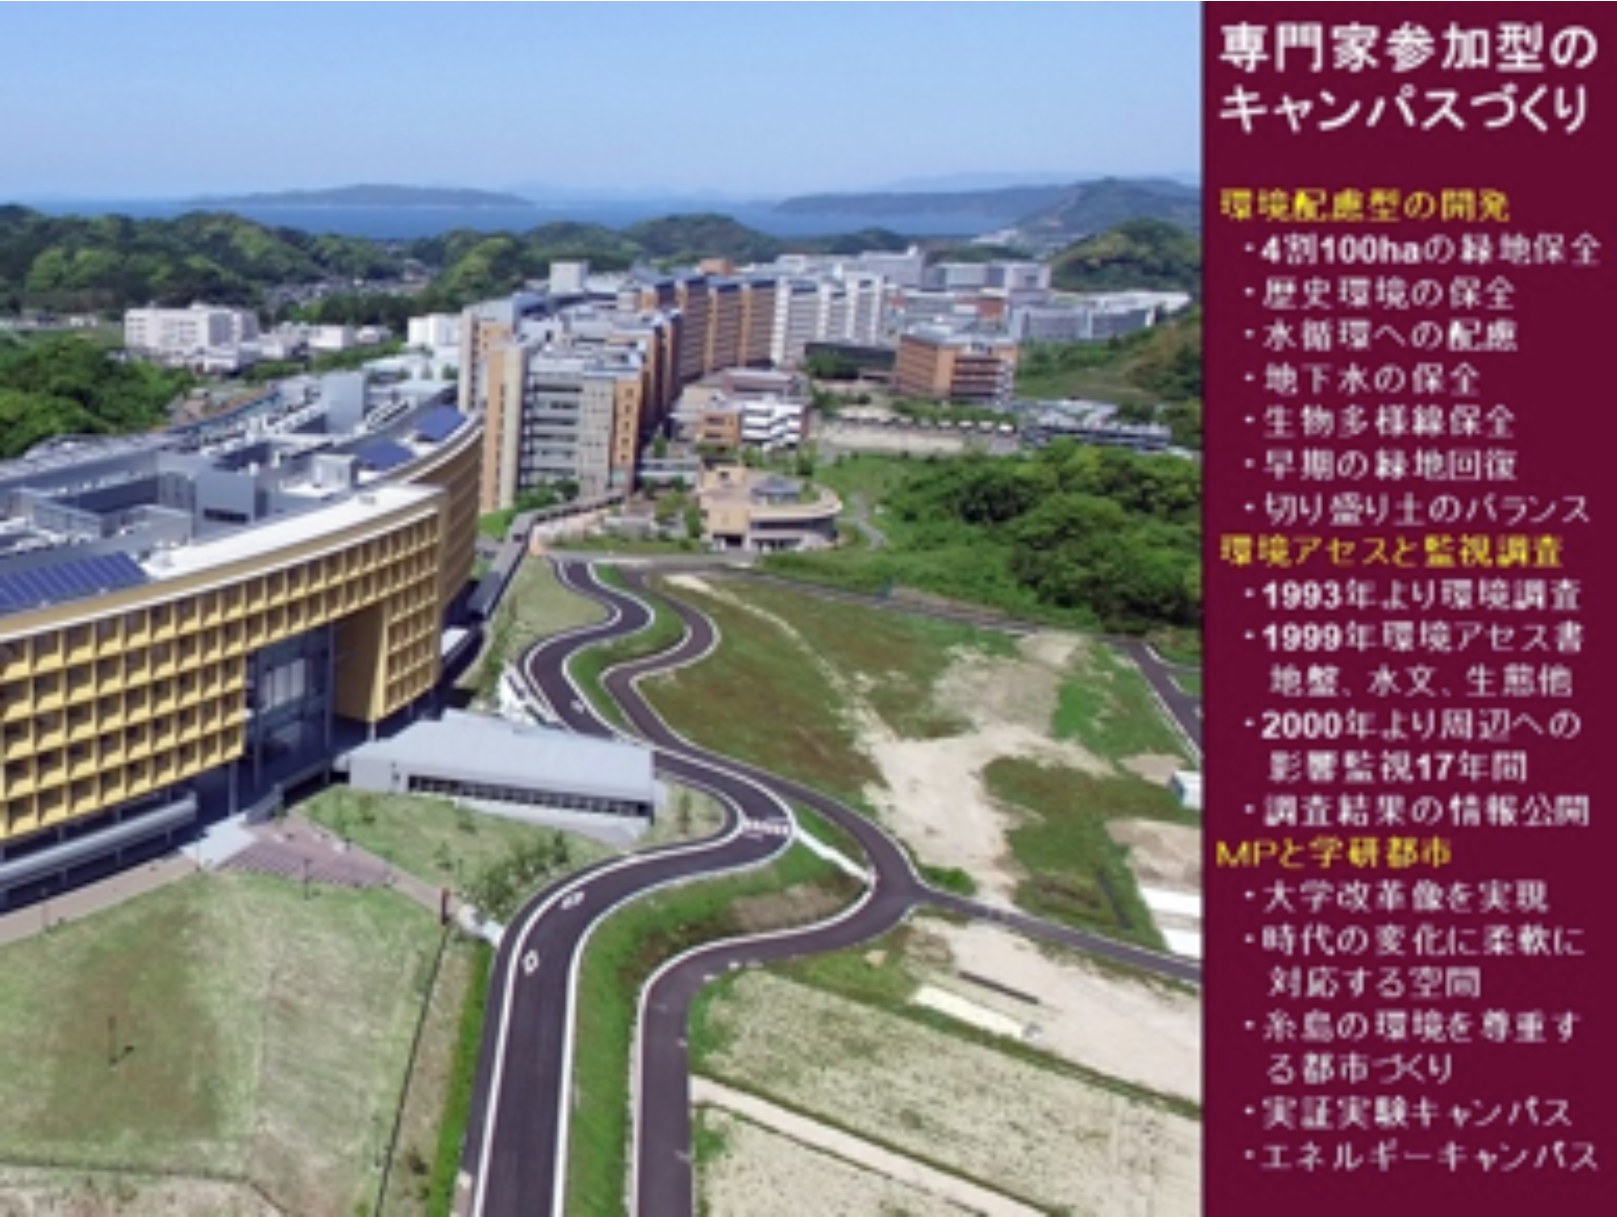 「九州大学の新キャンパスとまちづくり」スライド